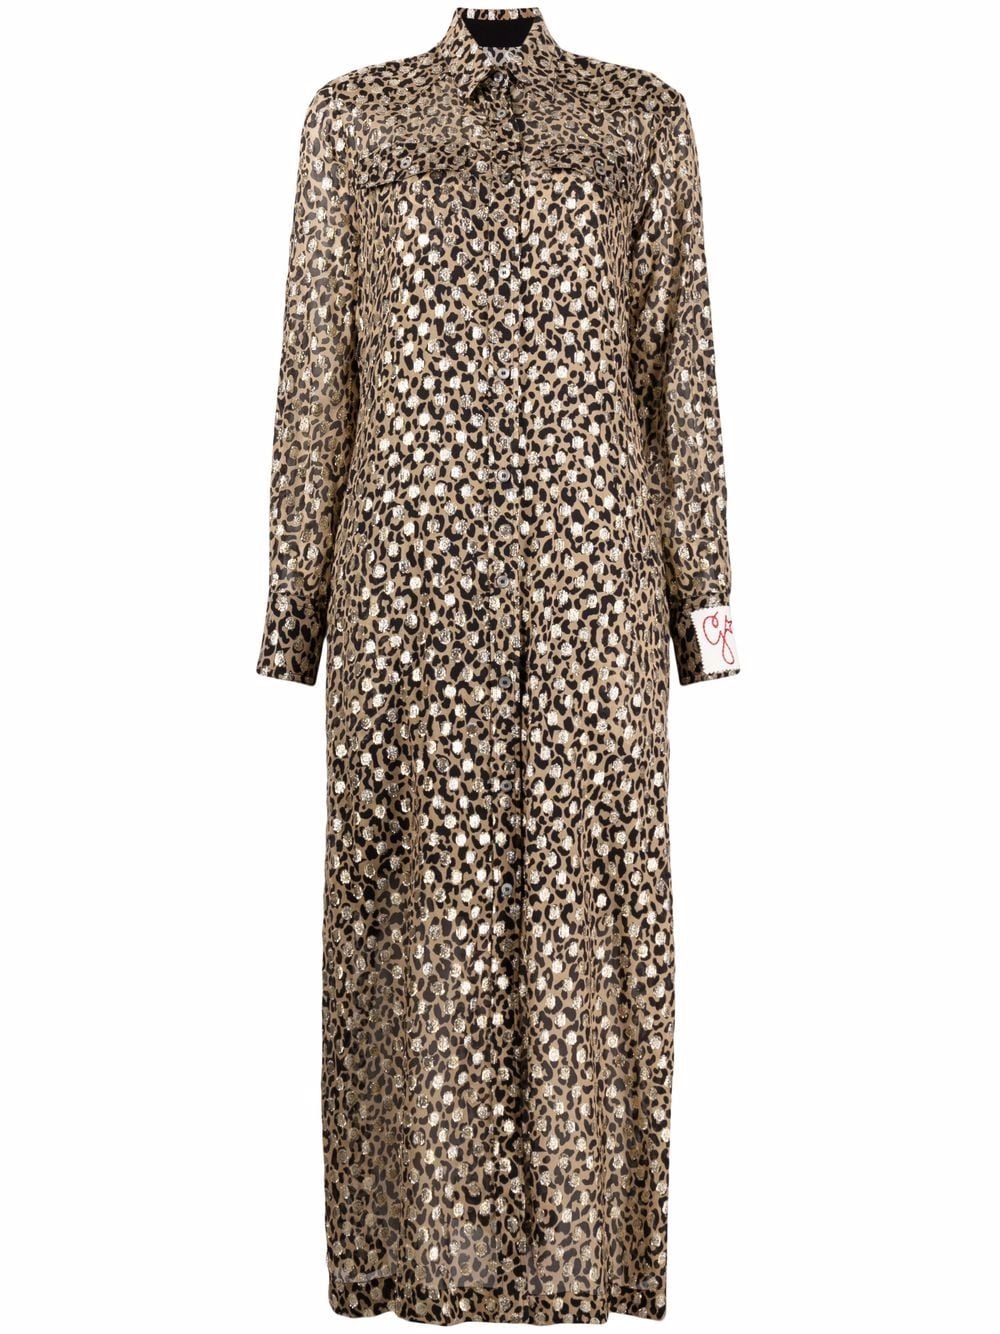 leopard-print shirt dress